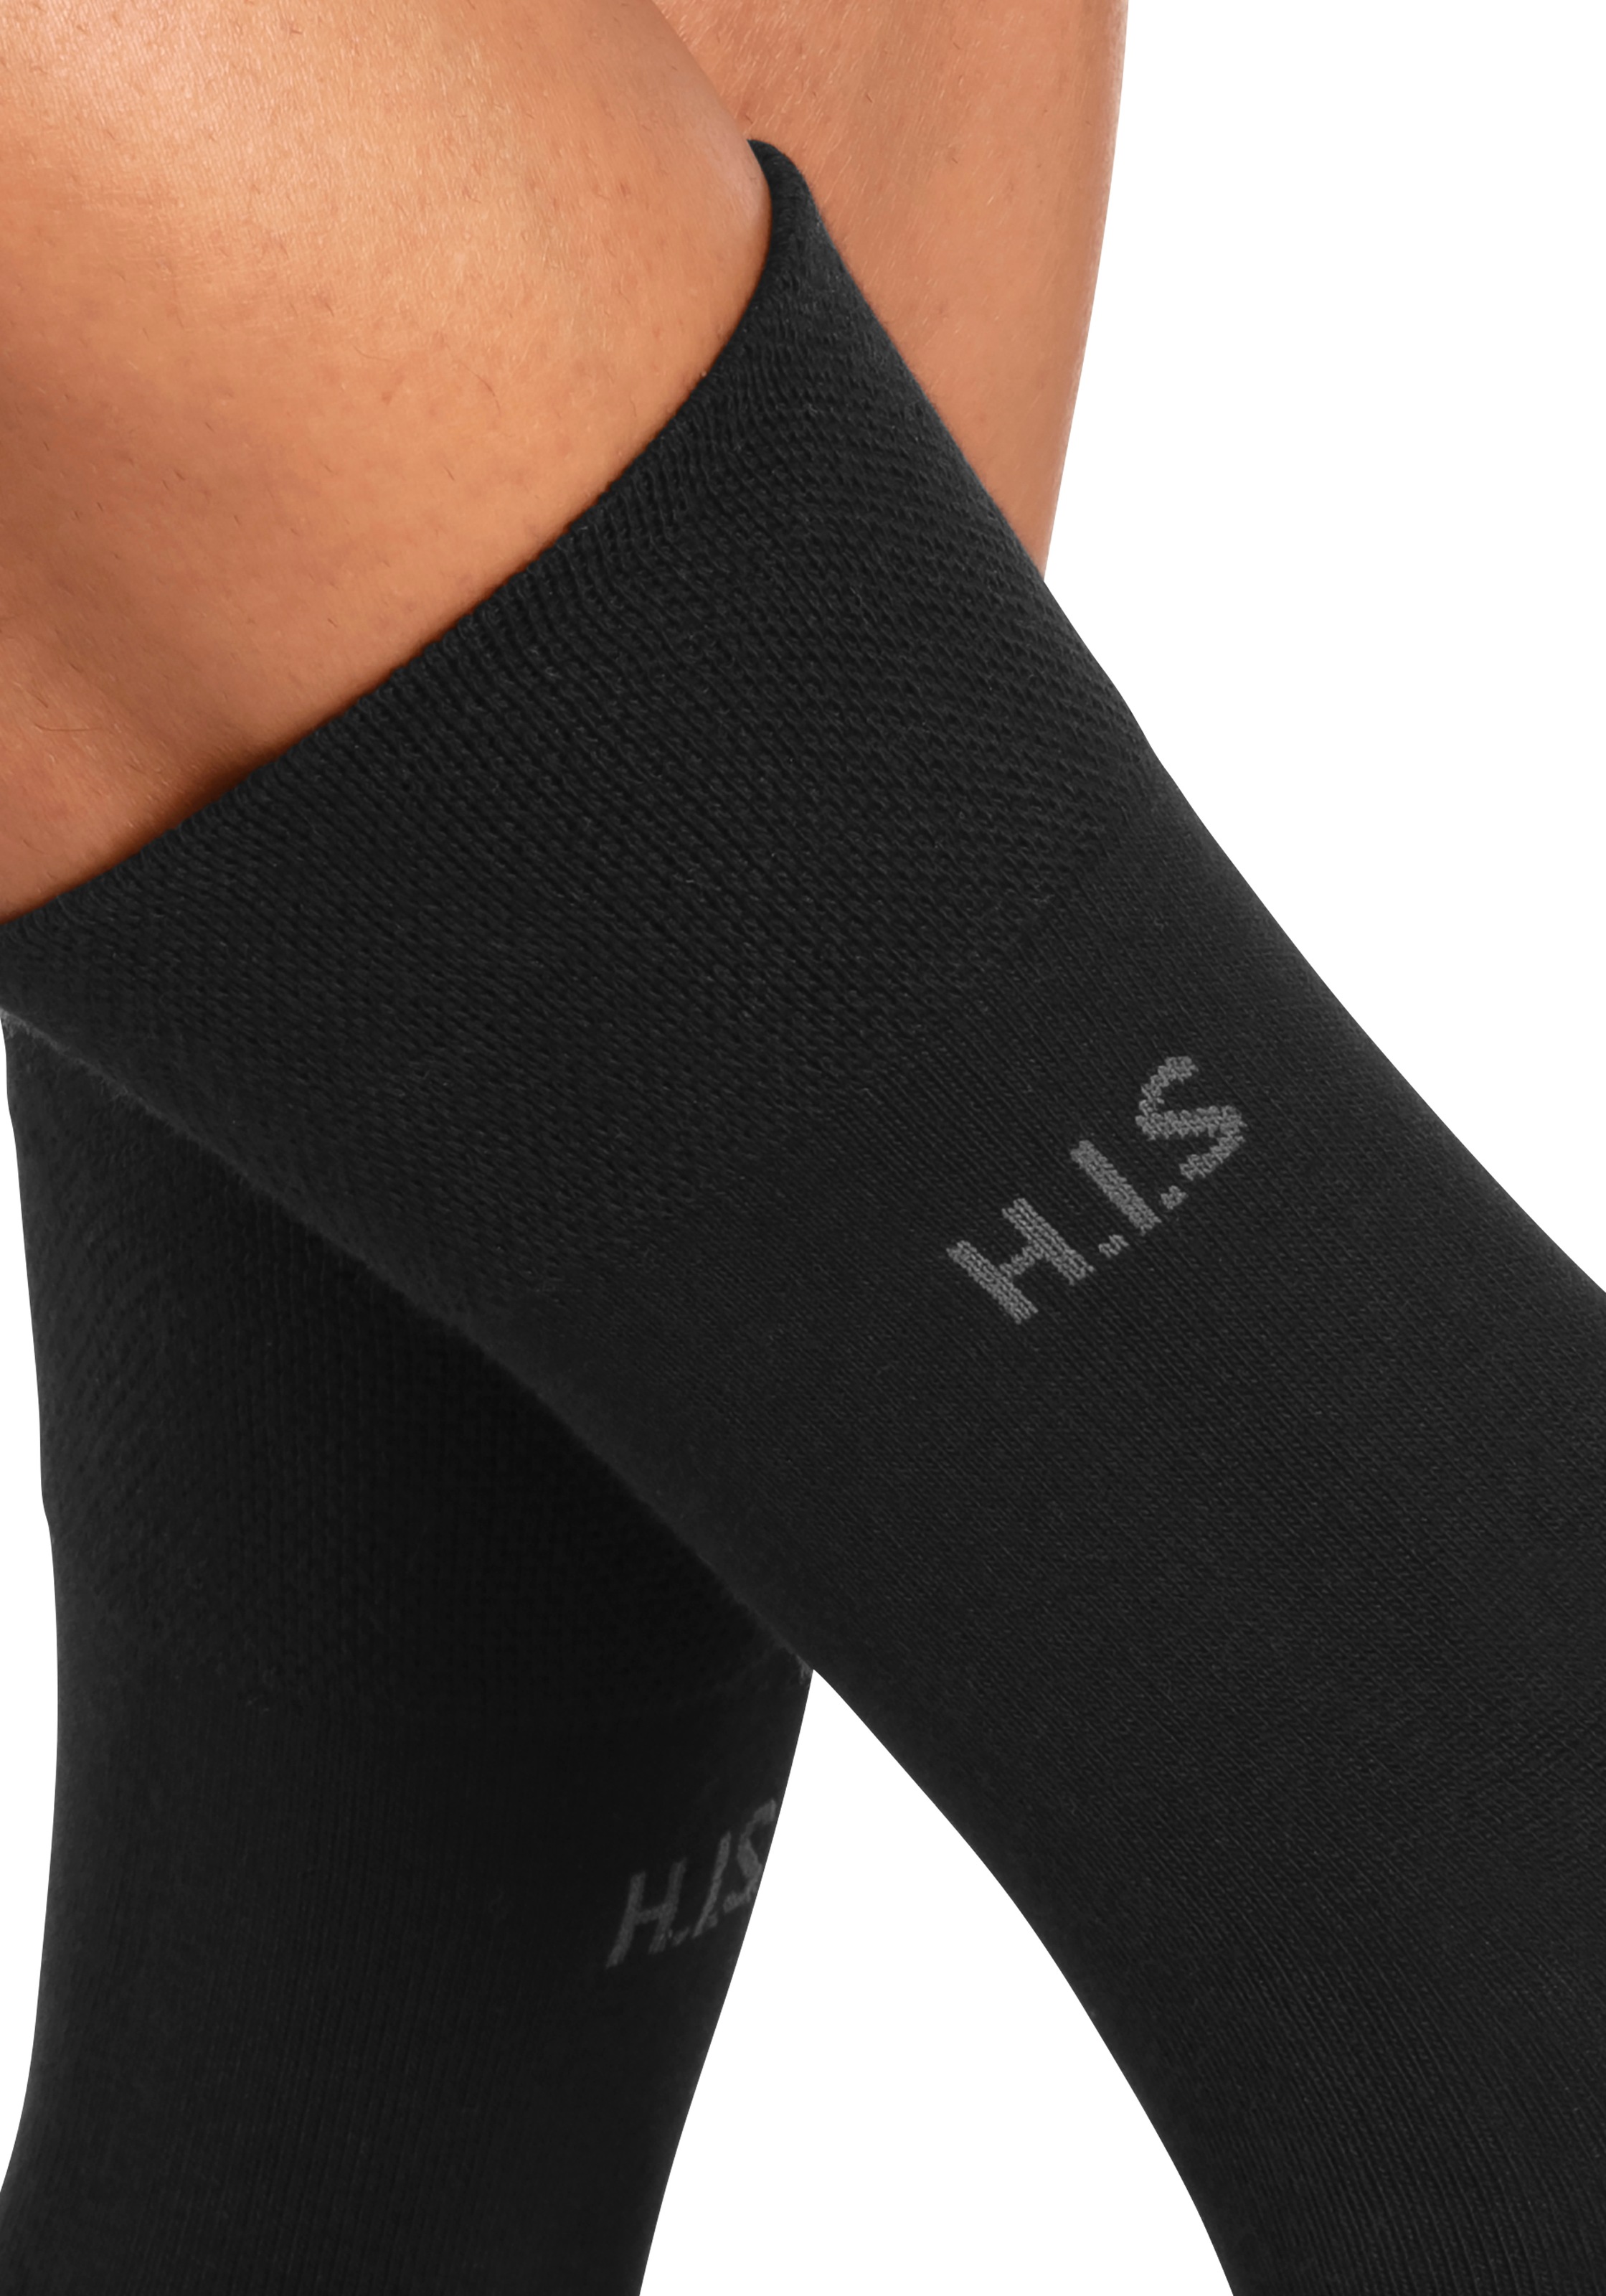 H.I.S Paar) einschneidendes (Packung Socken Gummi ohne 12